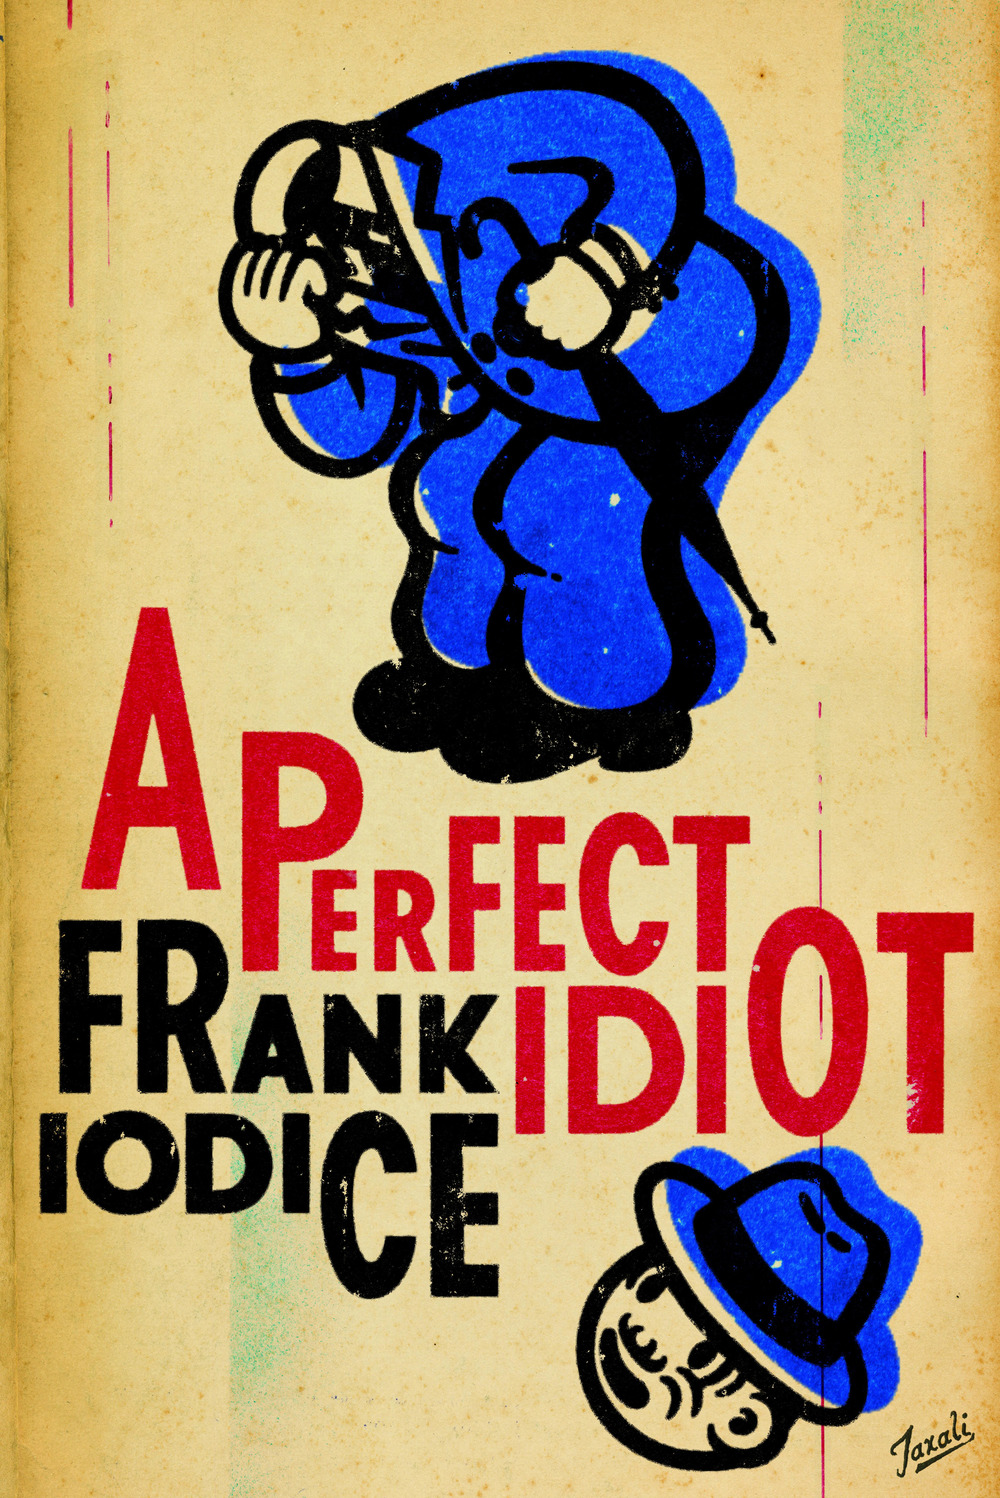 A perfect idiot